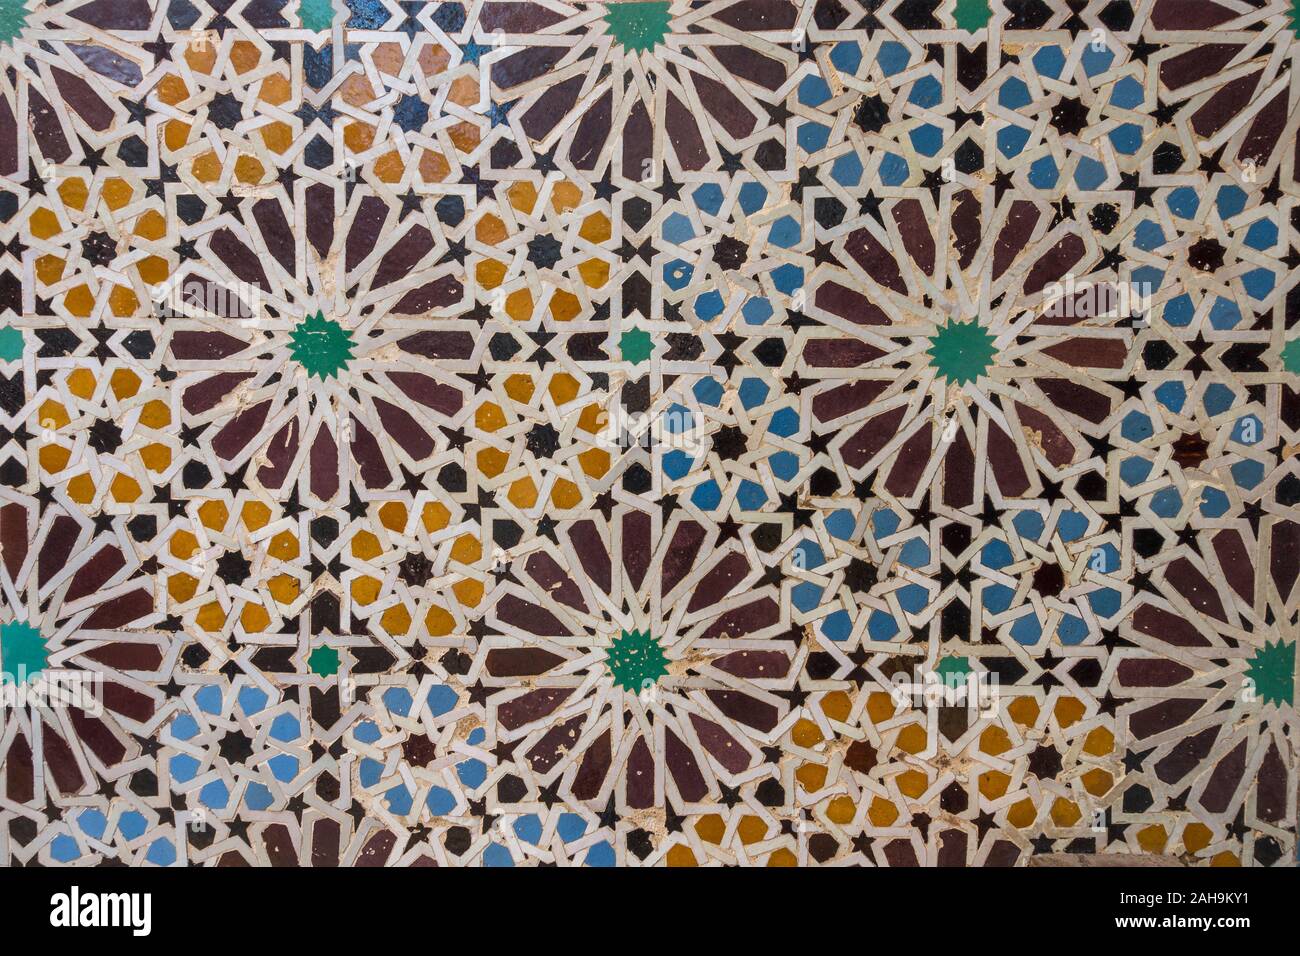 Mosaik mit orientalischem Muster aus Fliesen an der Wand, die konzentrische Kreise bilden, Marrakesch, Marokko. Stockfoto